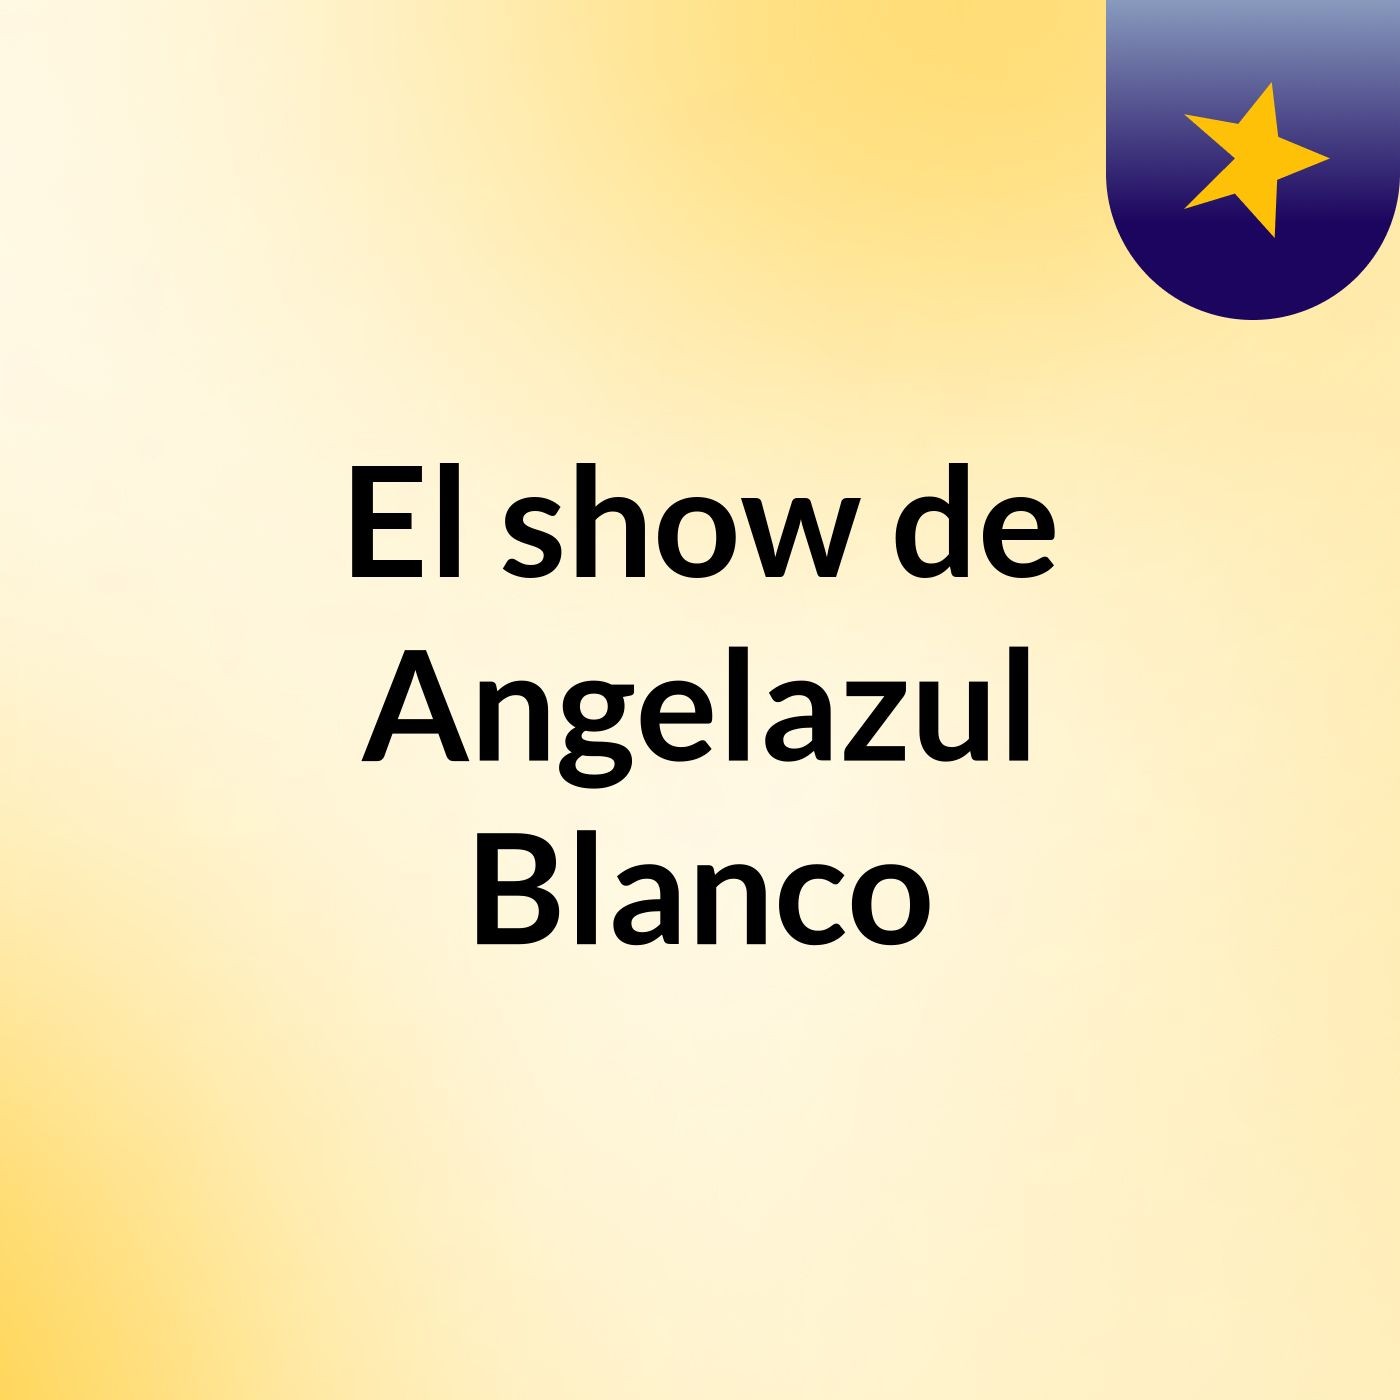 Episodio 2 - El show de Angelazul Blanco